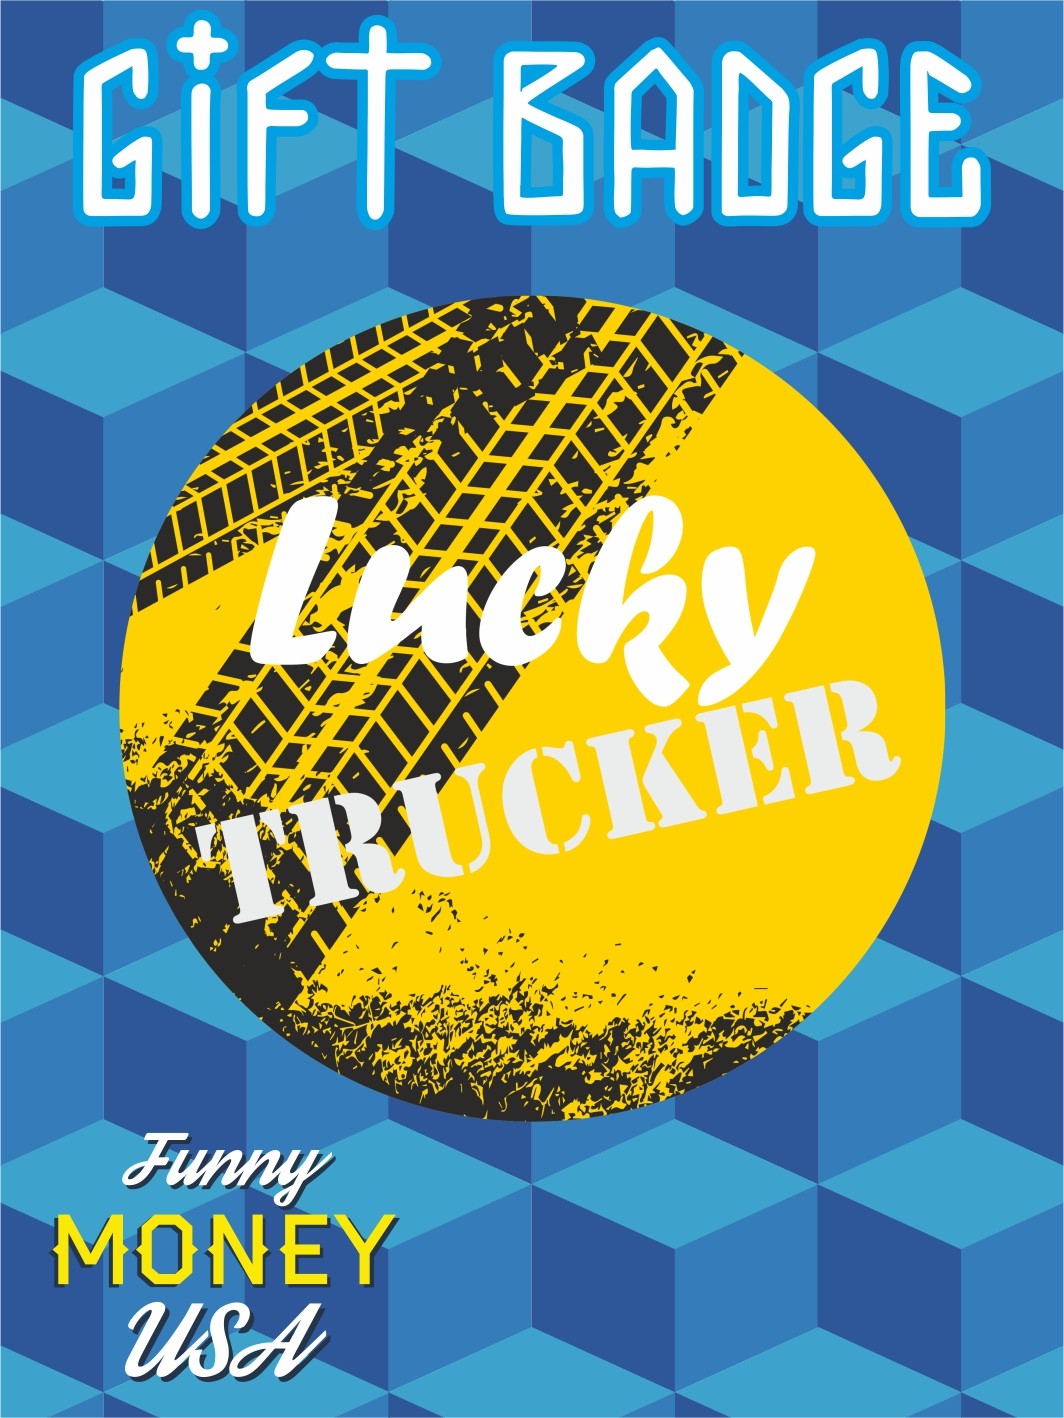 Gift badges "Lucky trucker"